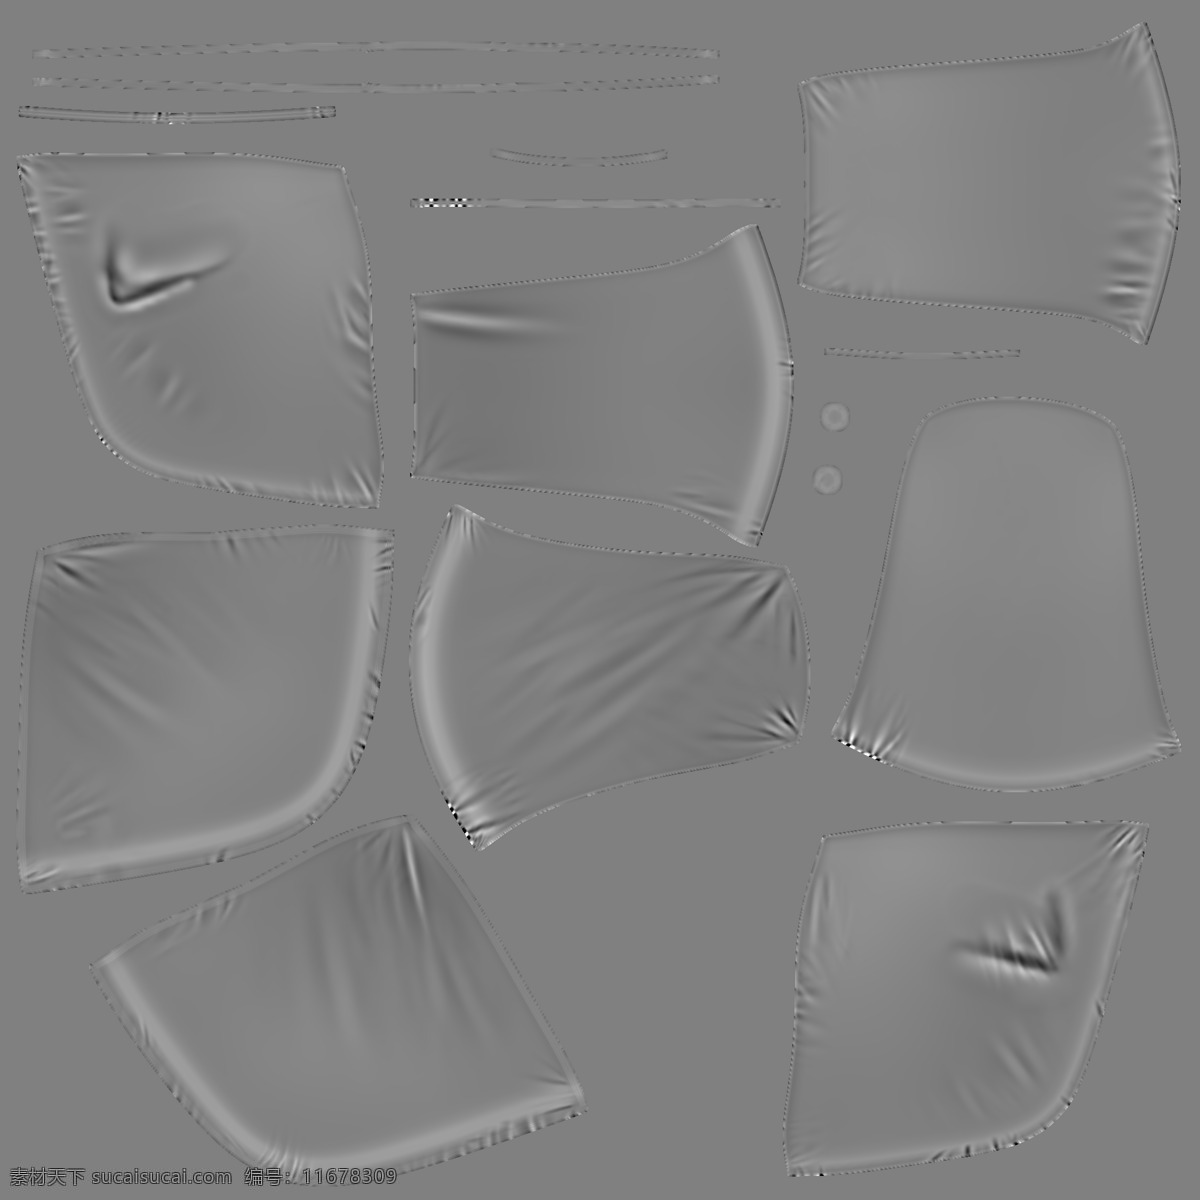 皮质 休闲椅 黑色 家具 模型 椅子 3d模型素材 家具模型